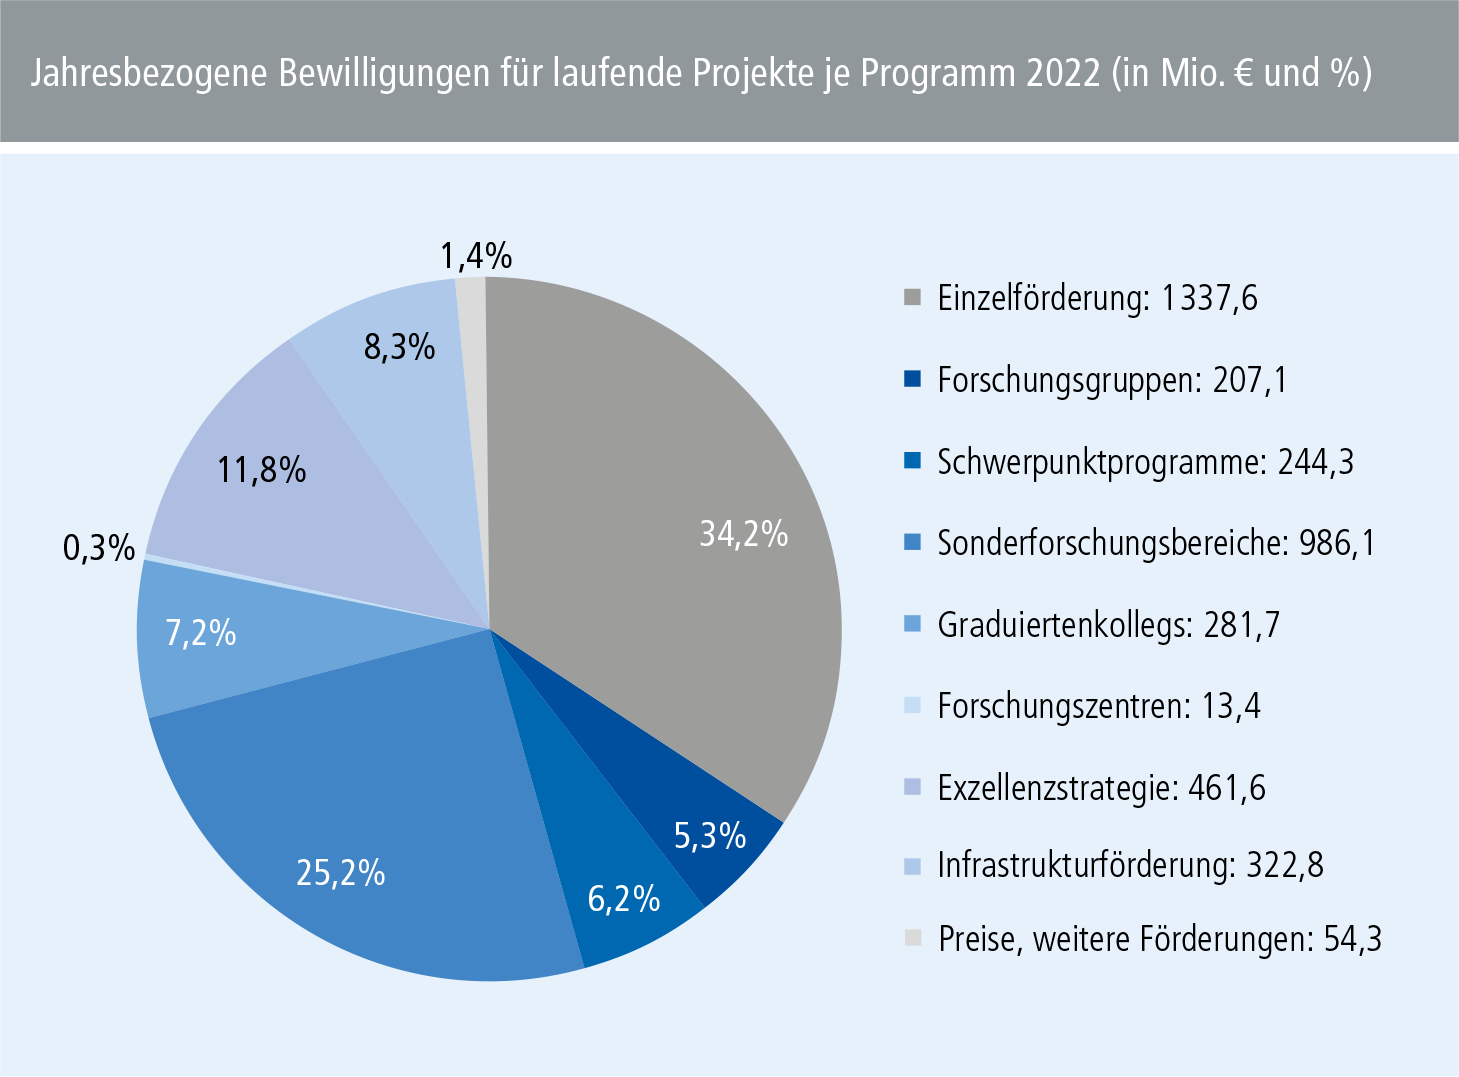 Diagramm aus dem Jahresbericht 2022: Jahresbezogene Bewilligungen für laufende Projekte je Programm 2022 (in Mio. € und %)